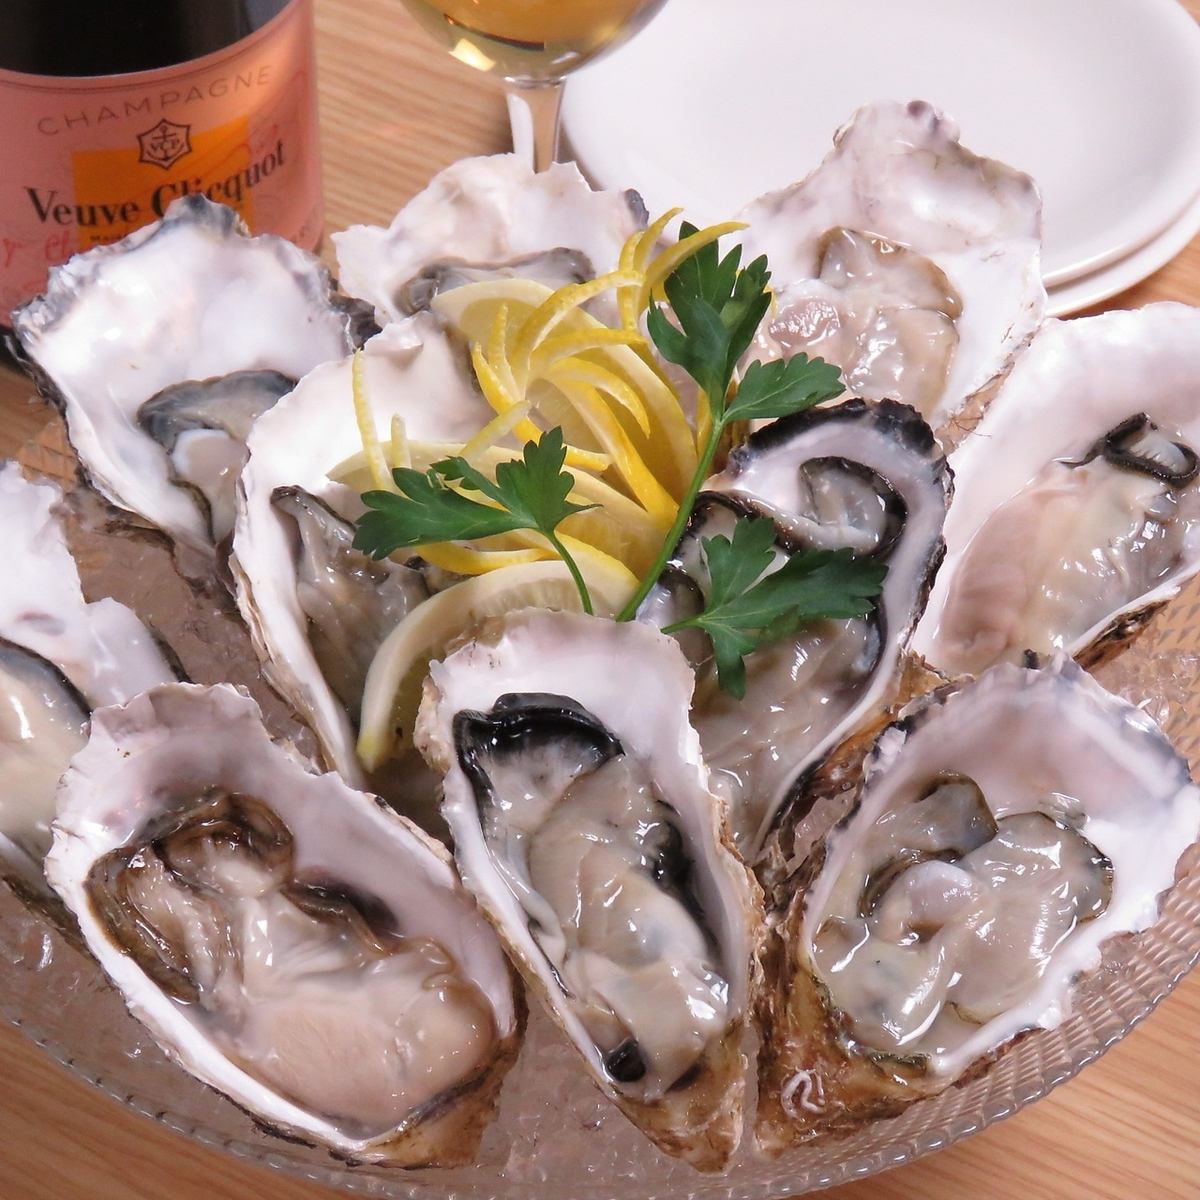 [從新宿站步行5分鐘]可以享受嚴選牡蠣、義大利美食和美酒的隱密義大利酒吧